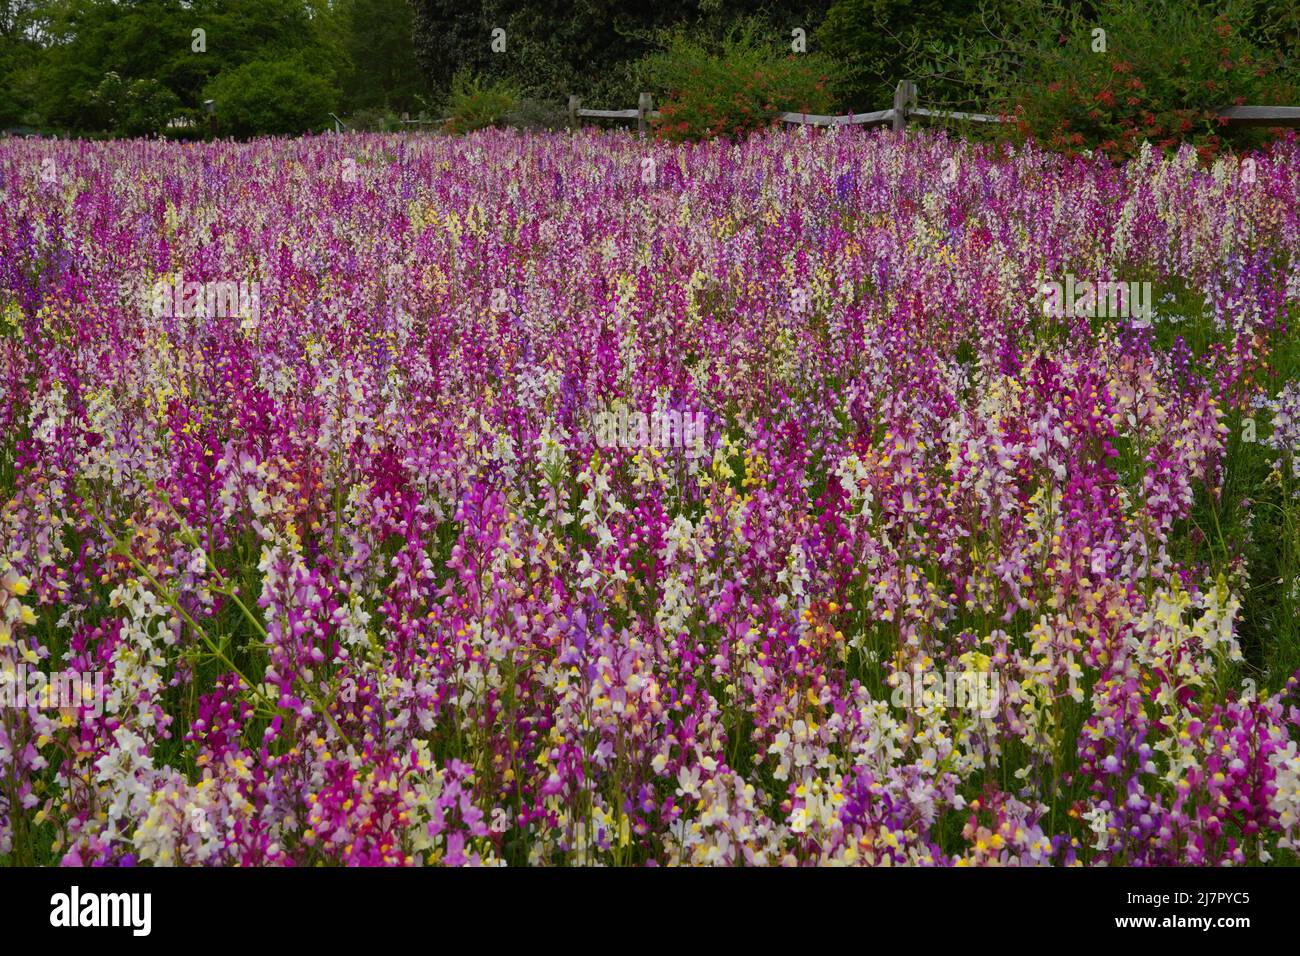 Ein Feld von angespornt Snapdragons - Linaria maroccana - auch bekannt als Toadflax in Blüte Stockfoto